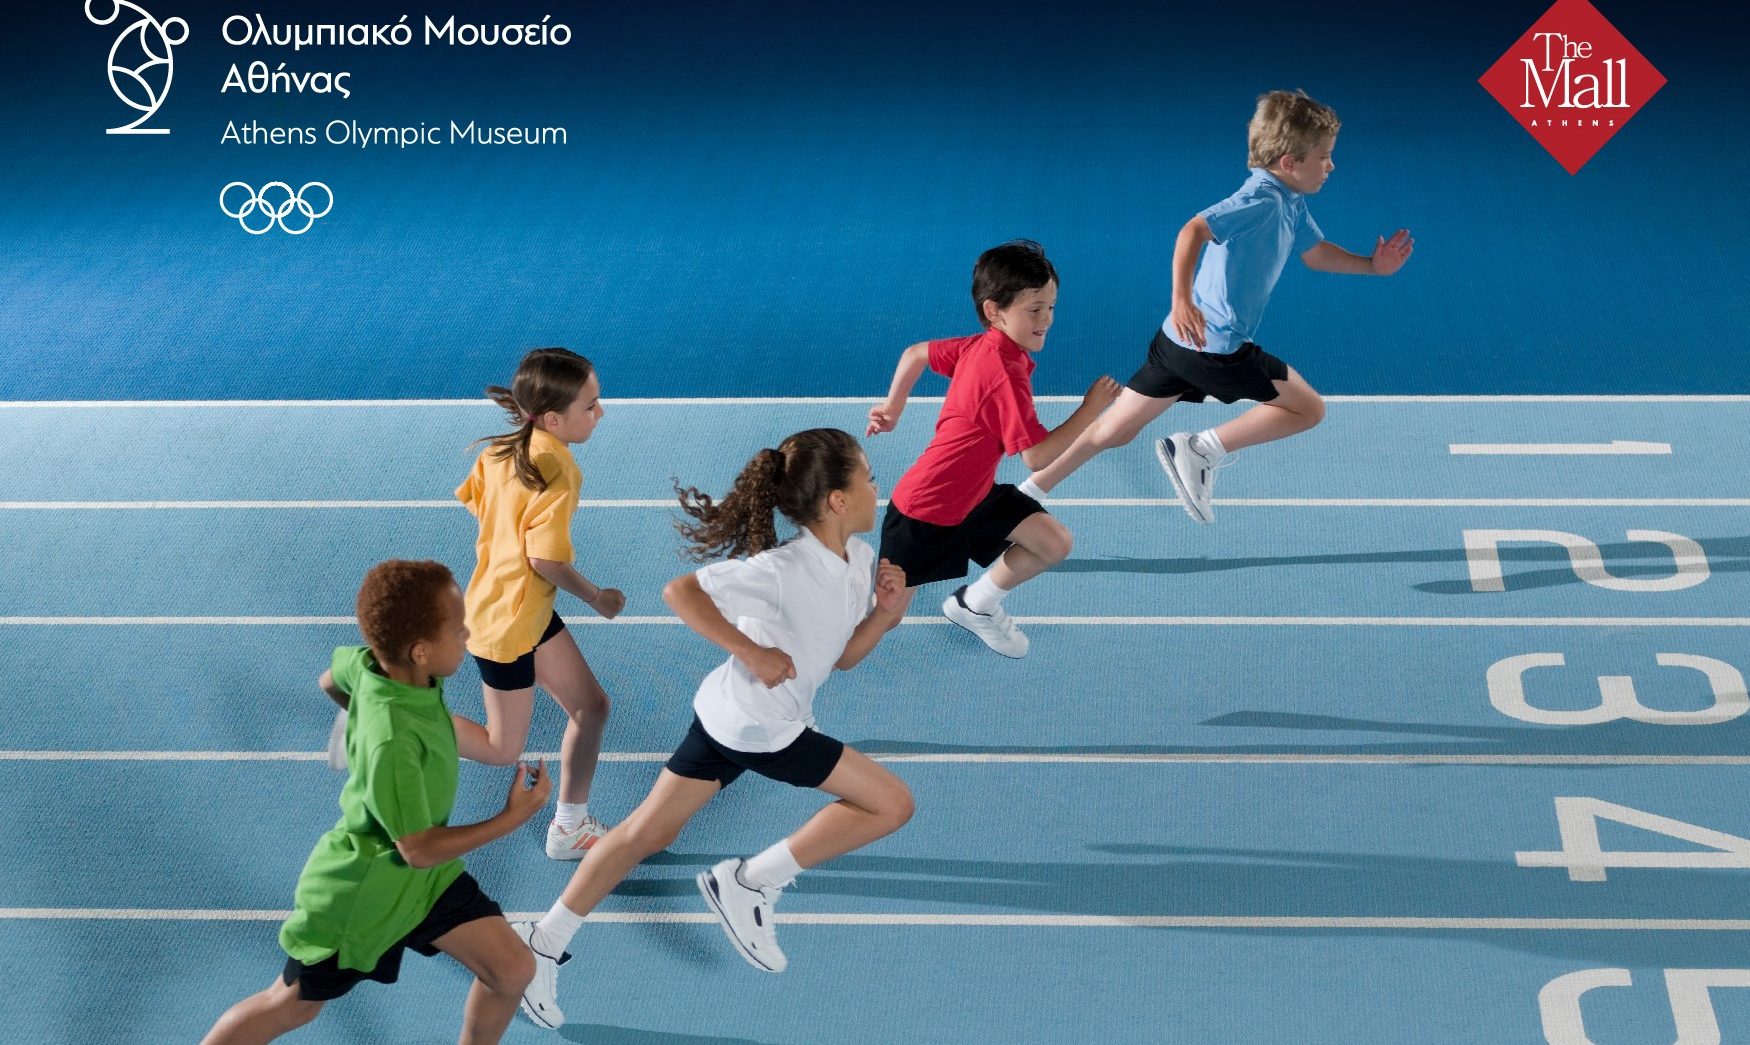 «Μικροί Ολυμπιονίκες» για παιδιά 5-12 ετών: Παίζουμε και μαθαίνουμε για τις αξίες του Ολυμπισμού με τις δράσεις του του Ολυμπιακού Μουσείου Αθήνας στο The Mall Athens